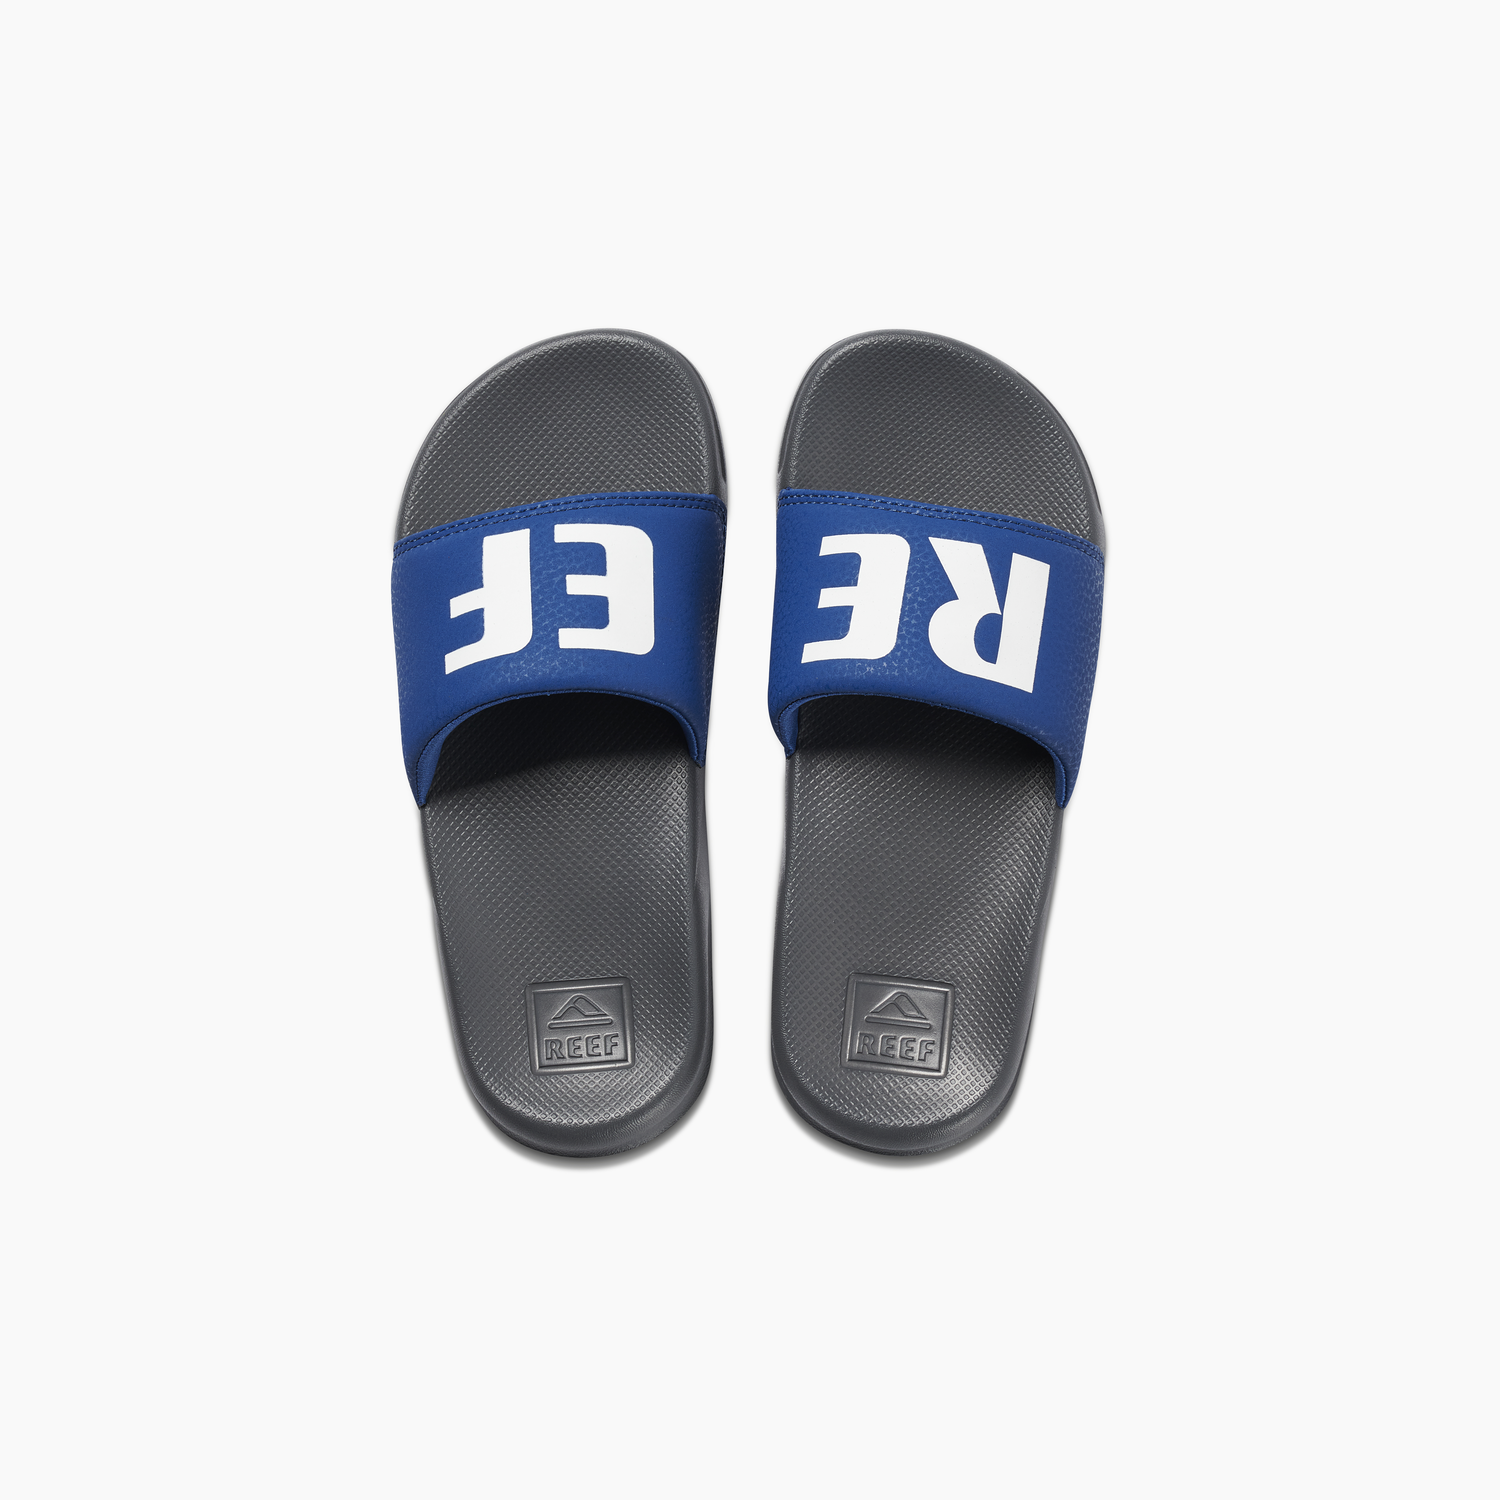 Reef Kids One Slide Sandals - Grey Bue youth footwear